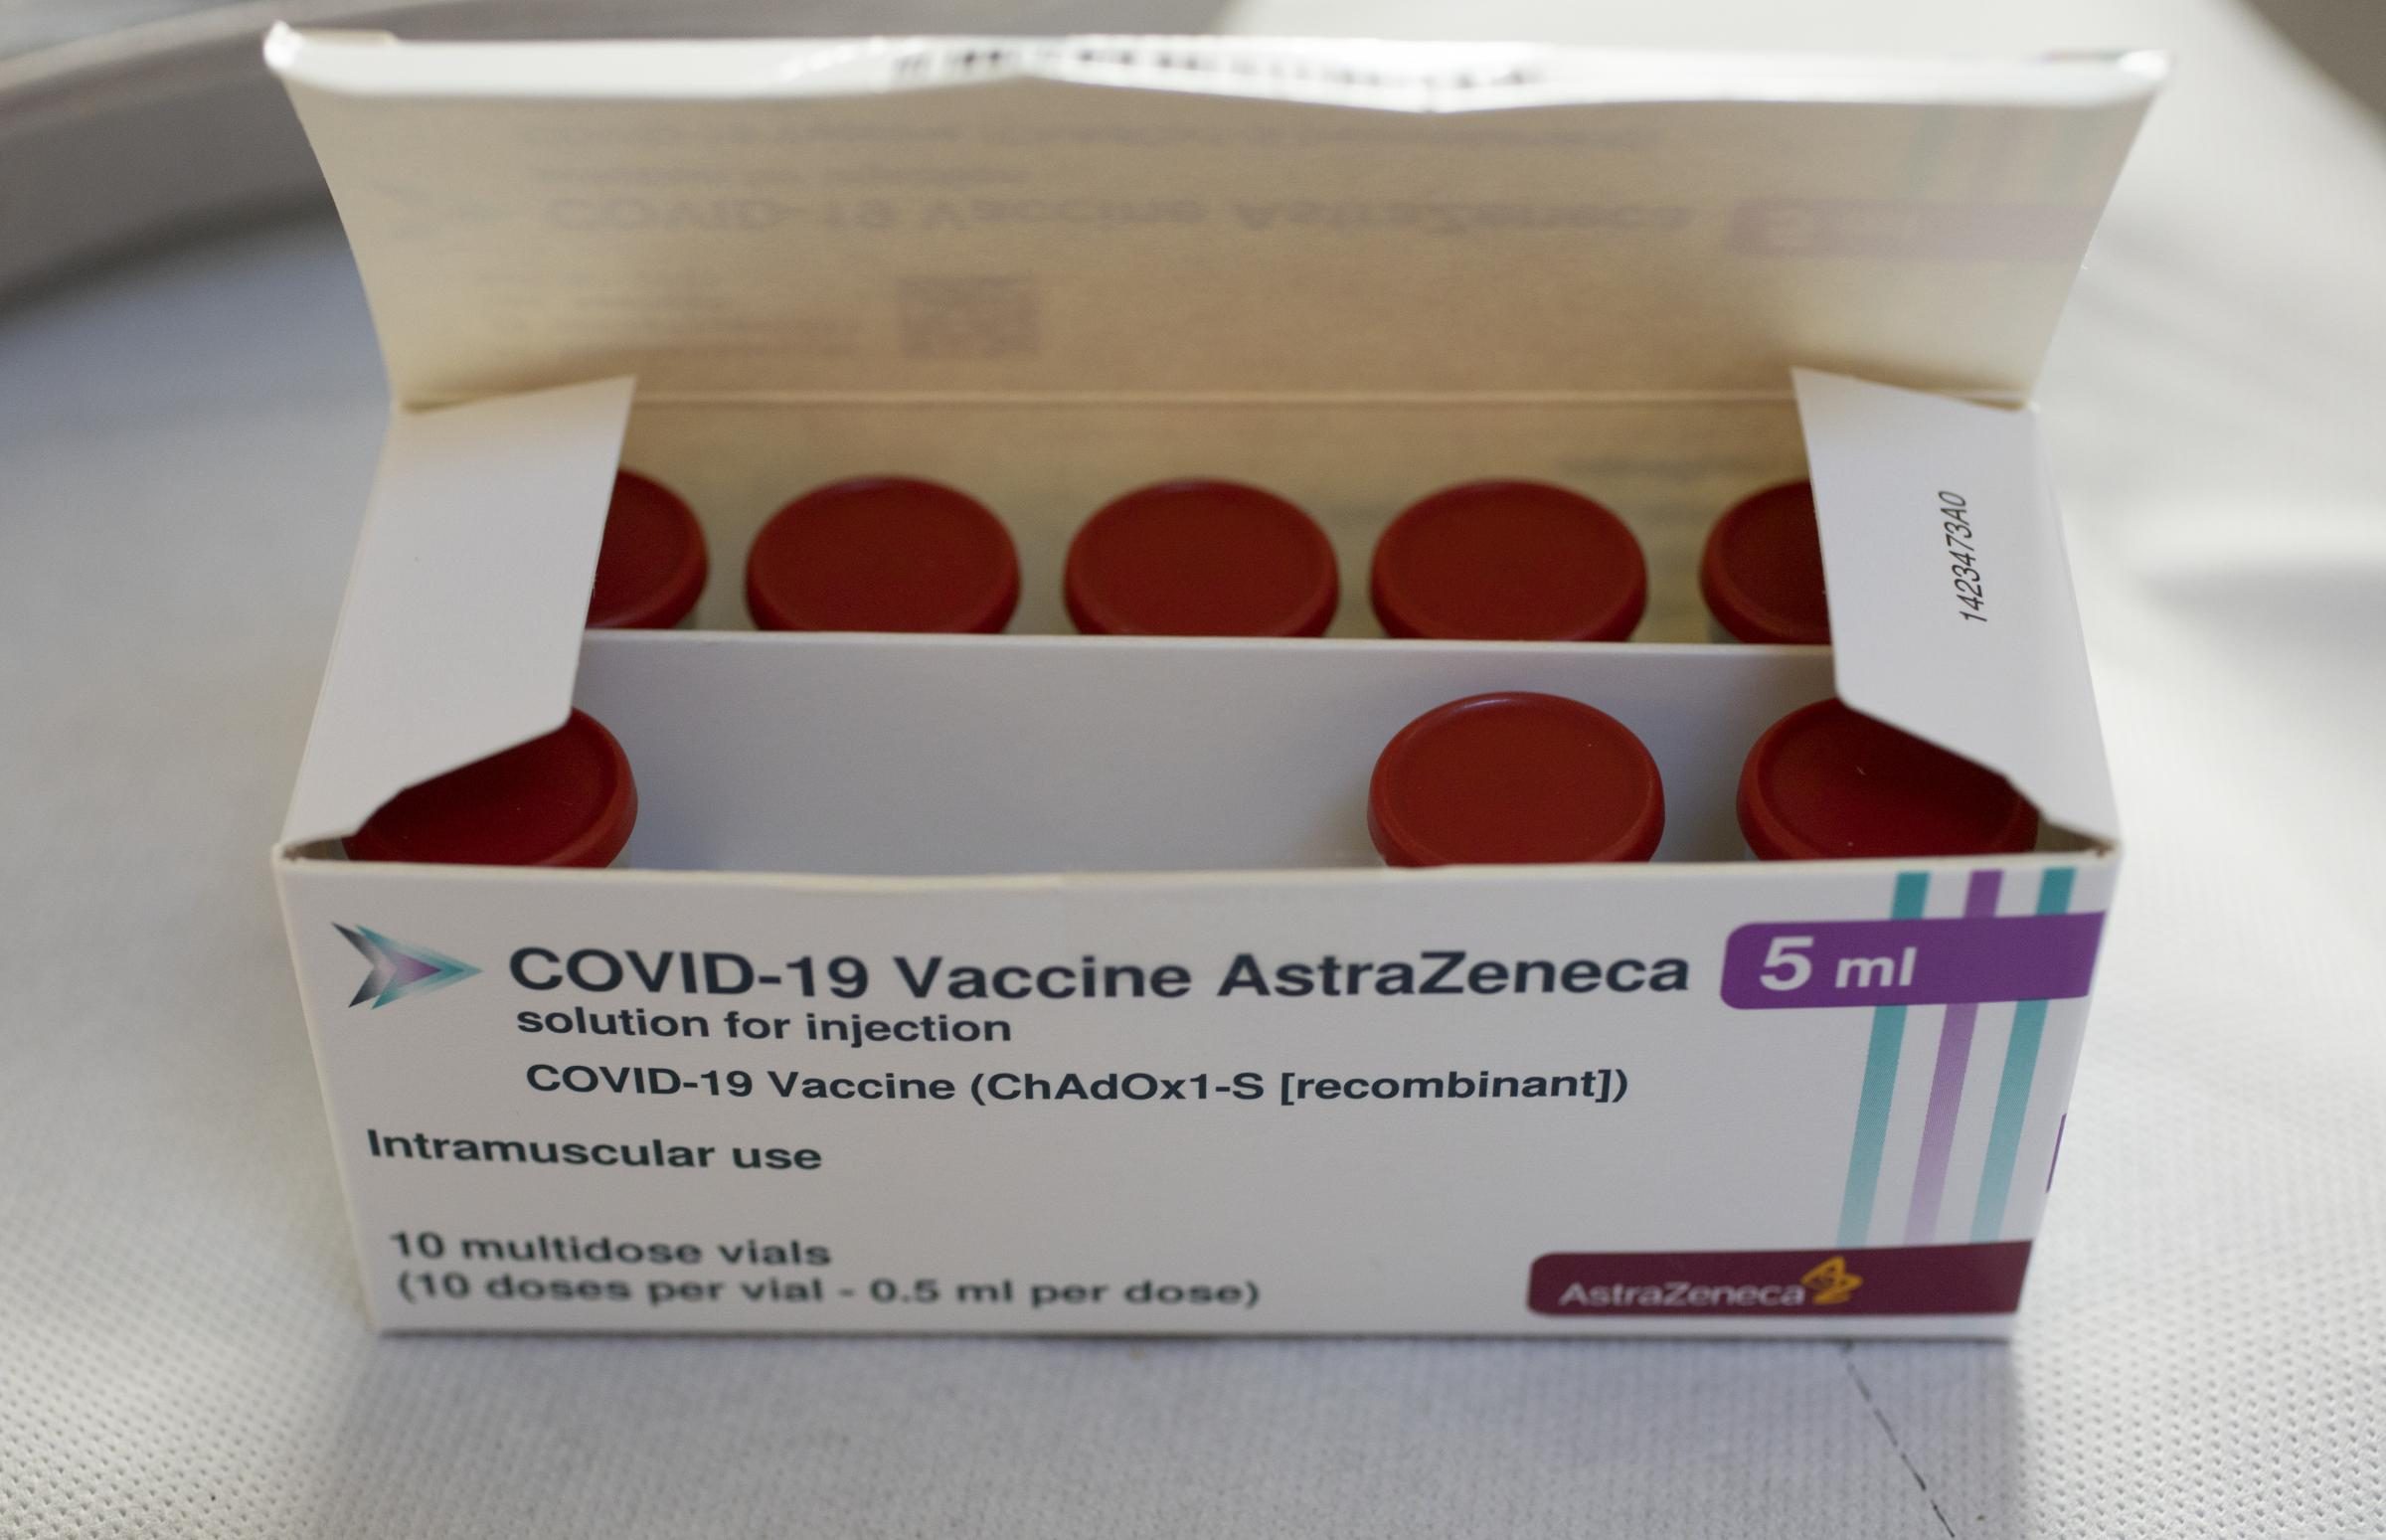 Vaccini Covid, dissequestrato lotto AstraZeneca sequestrato a marzo: nessuna anomalia